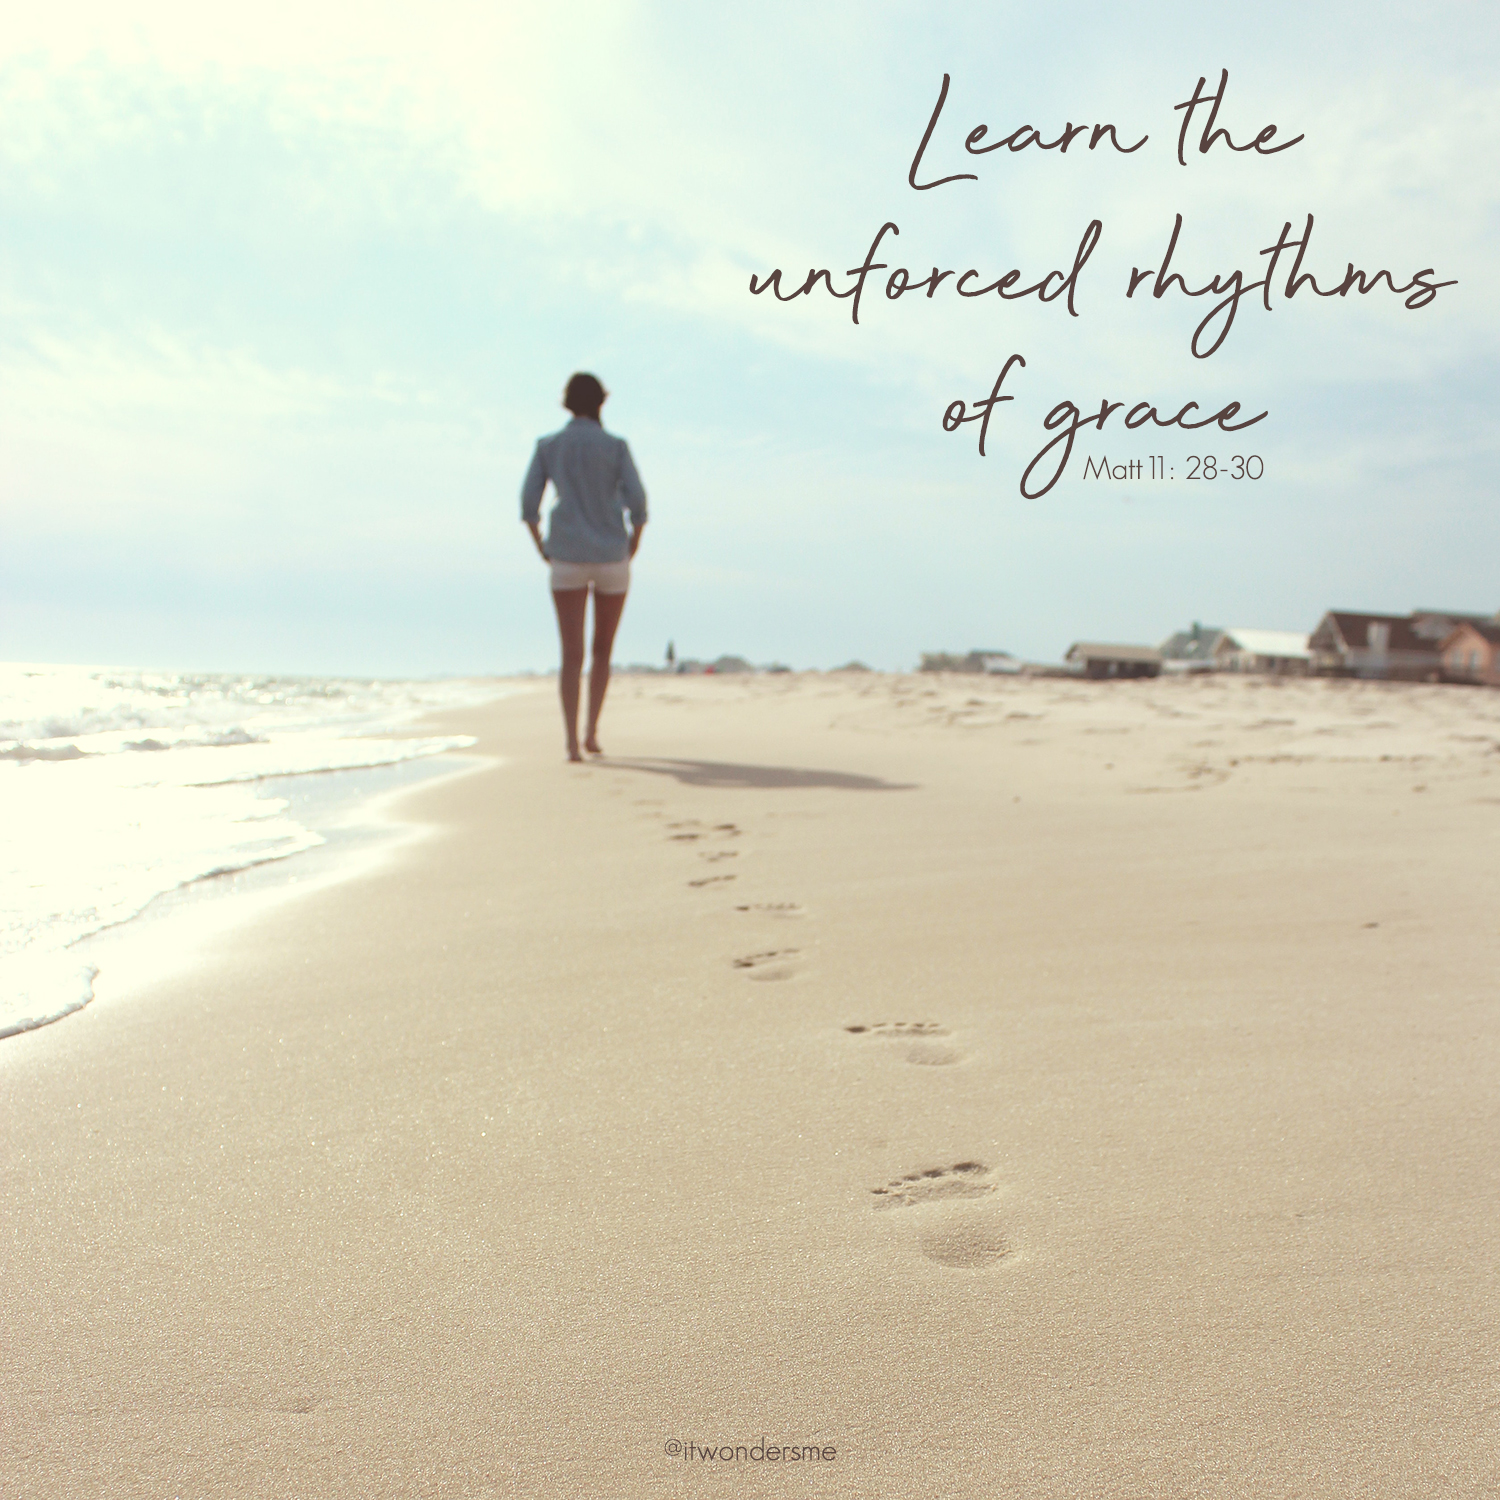 Learn the unforced rhythms of grace